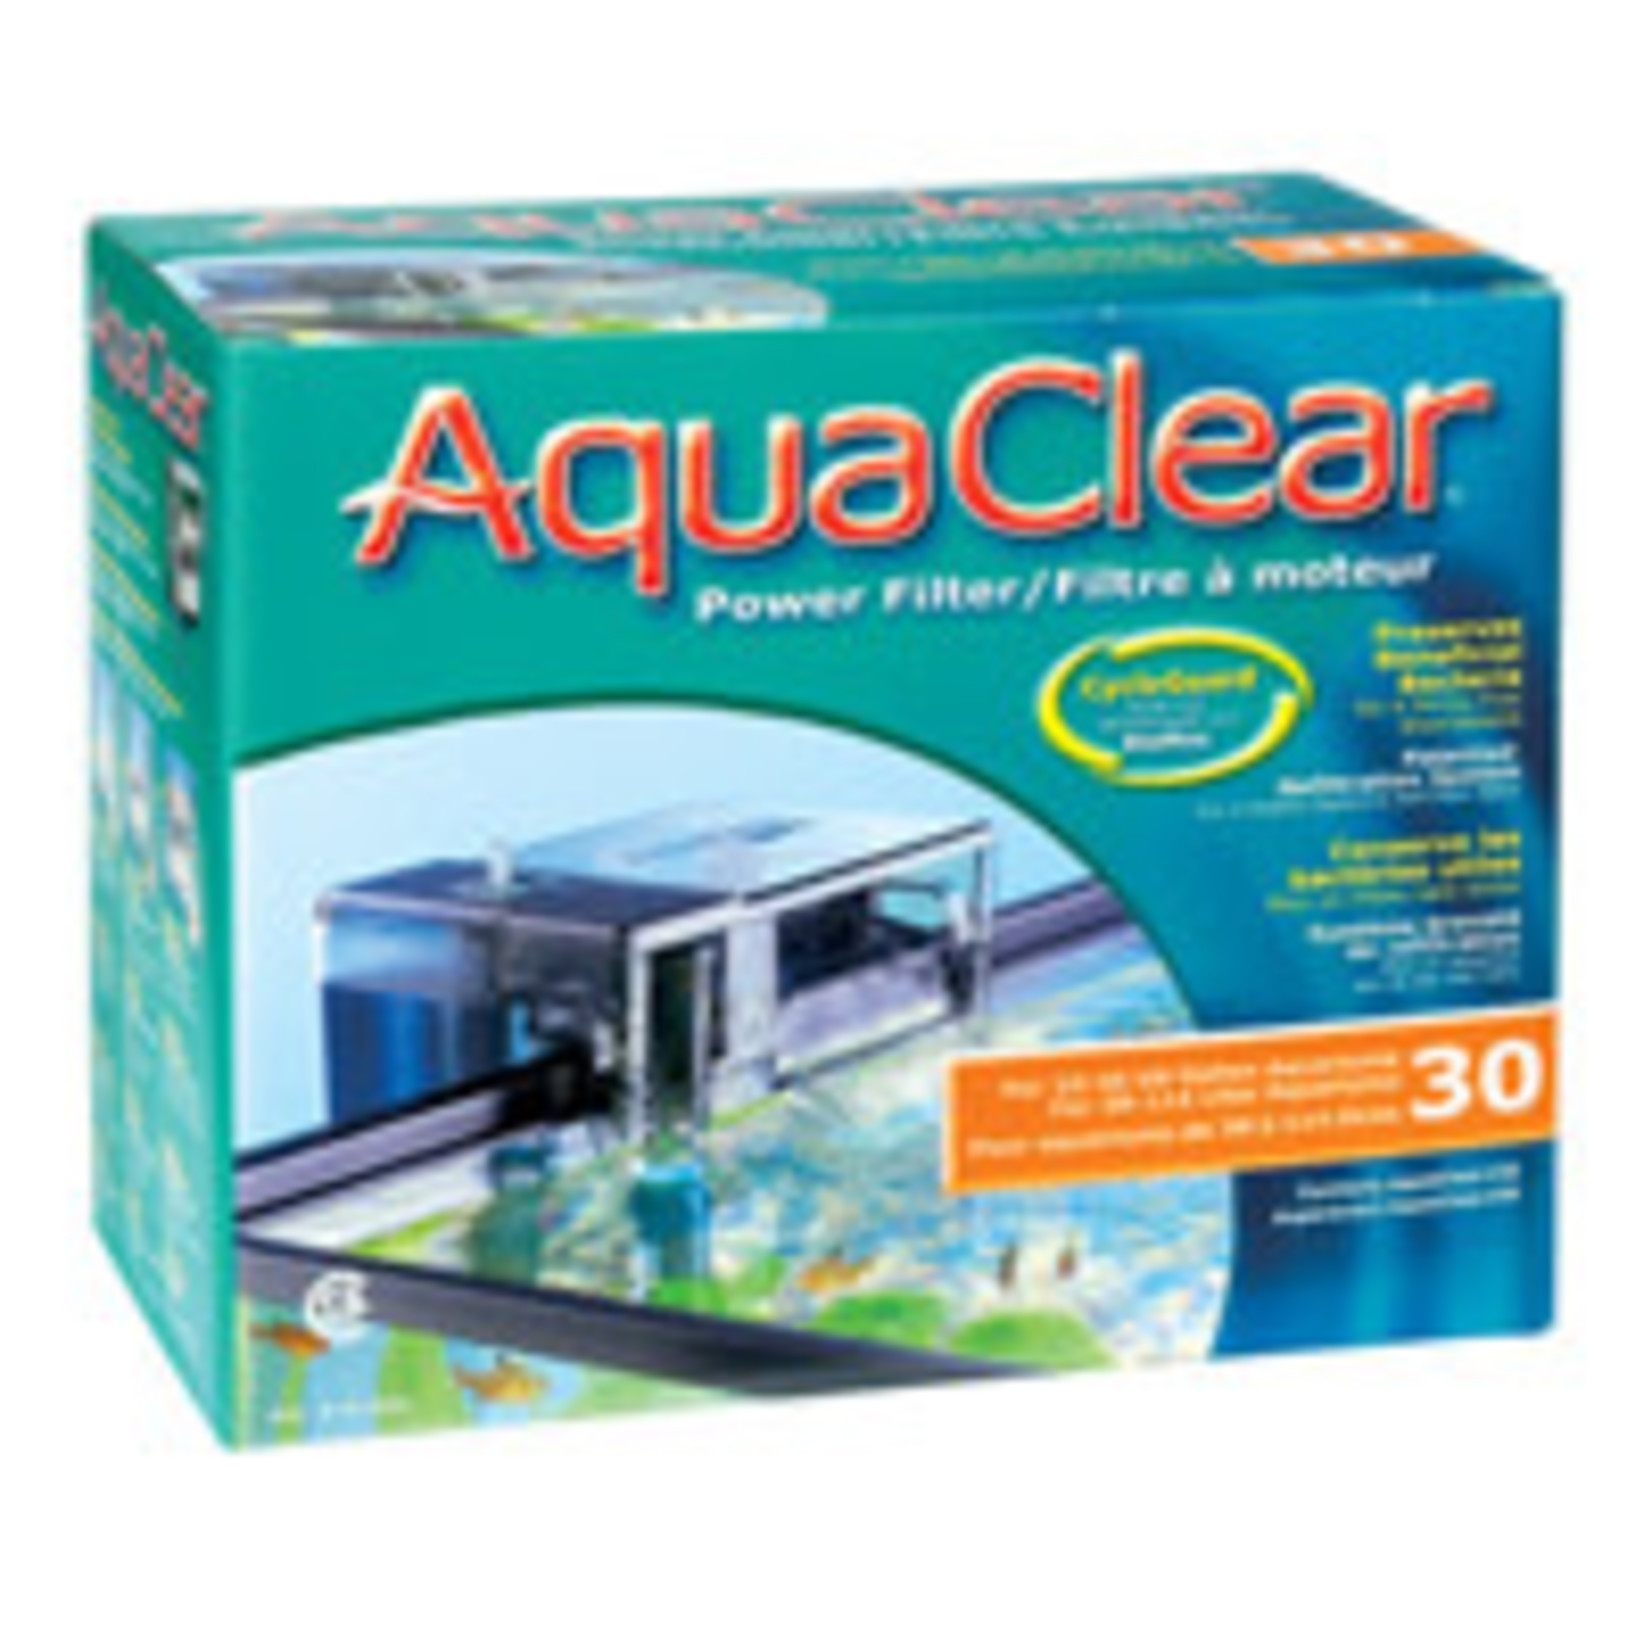 AquaClear Aqua Clear 30 (150) Filter w/Media